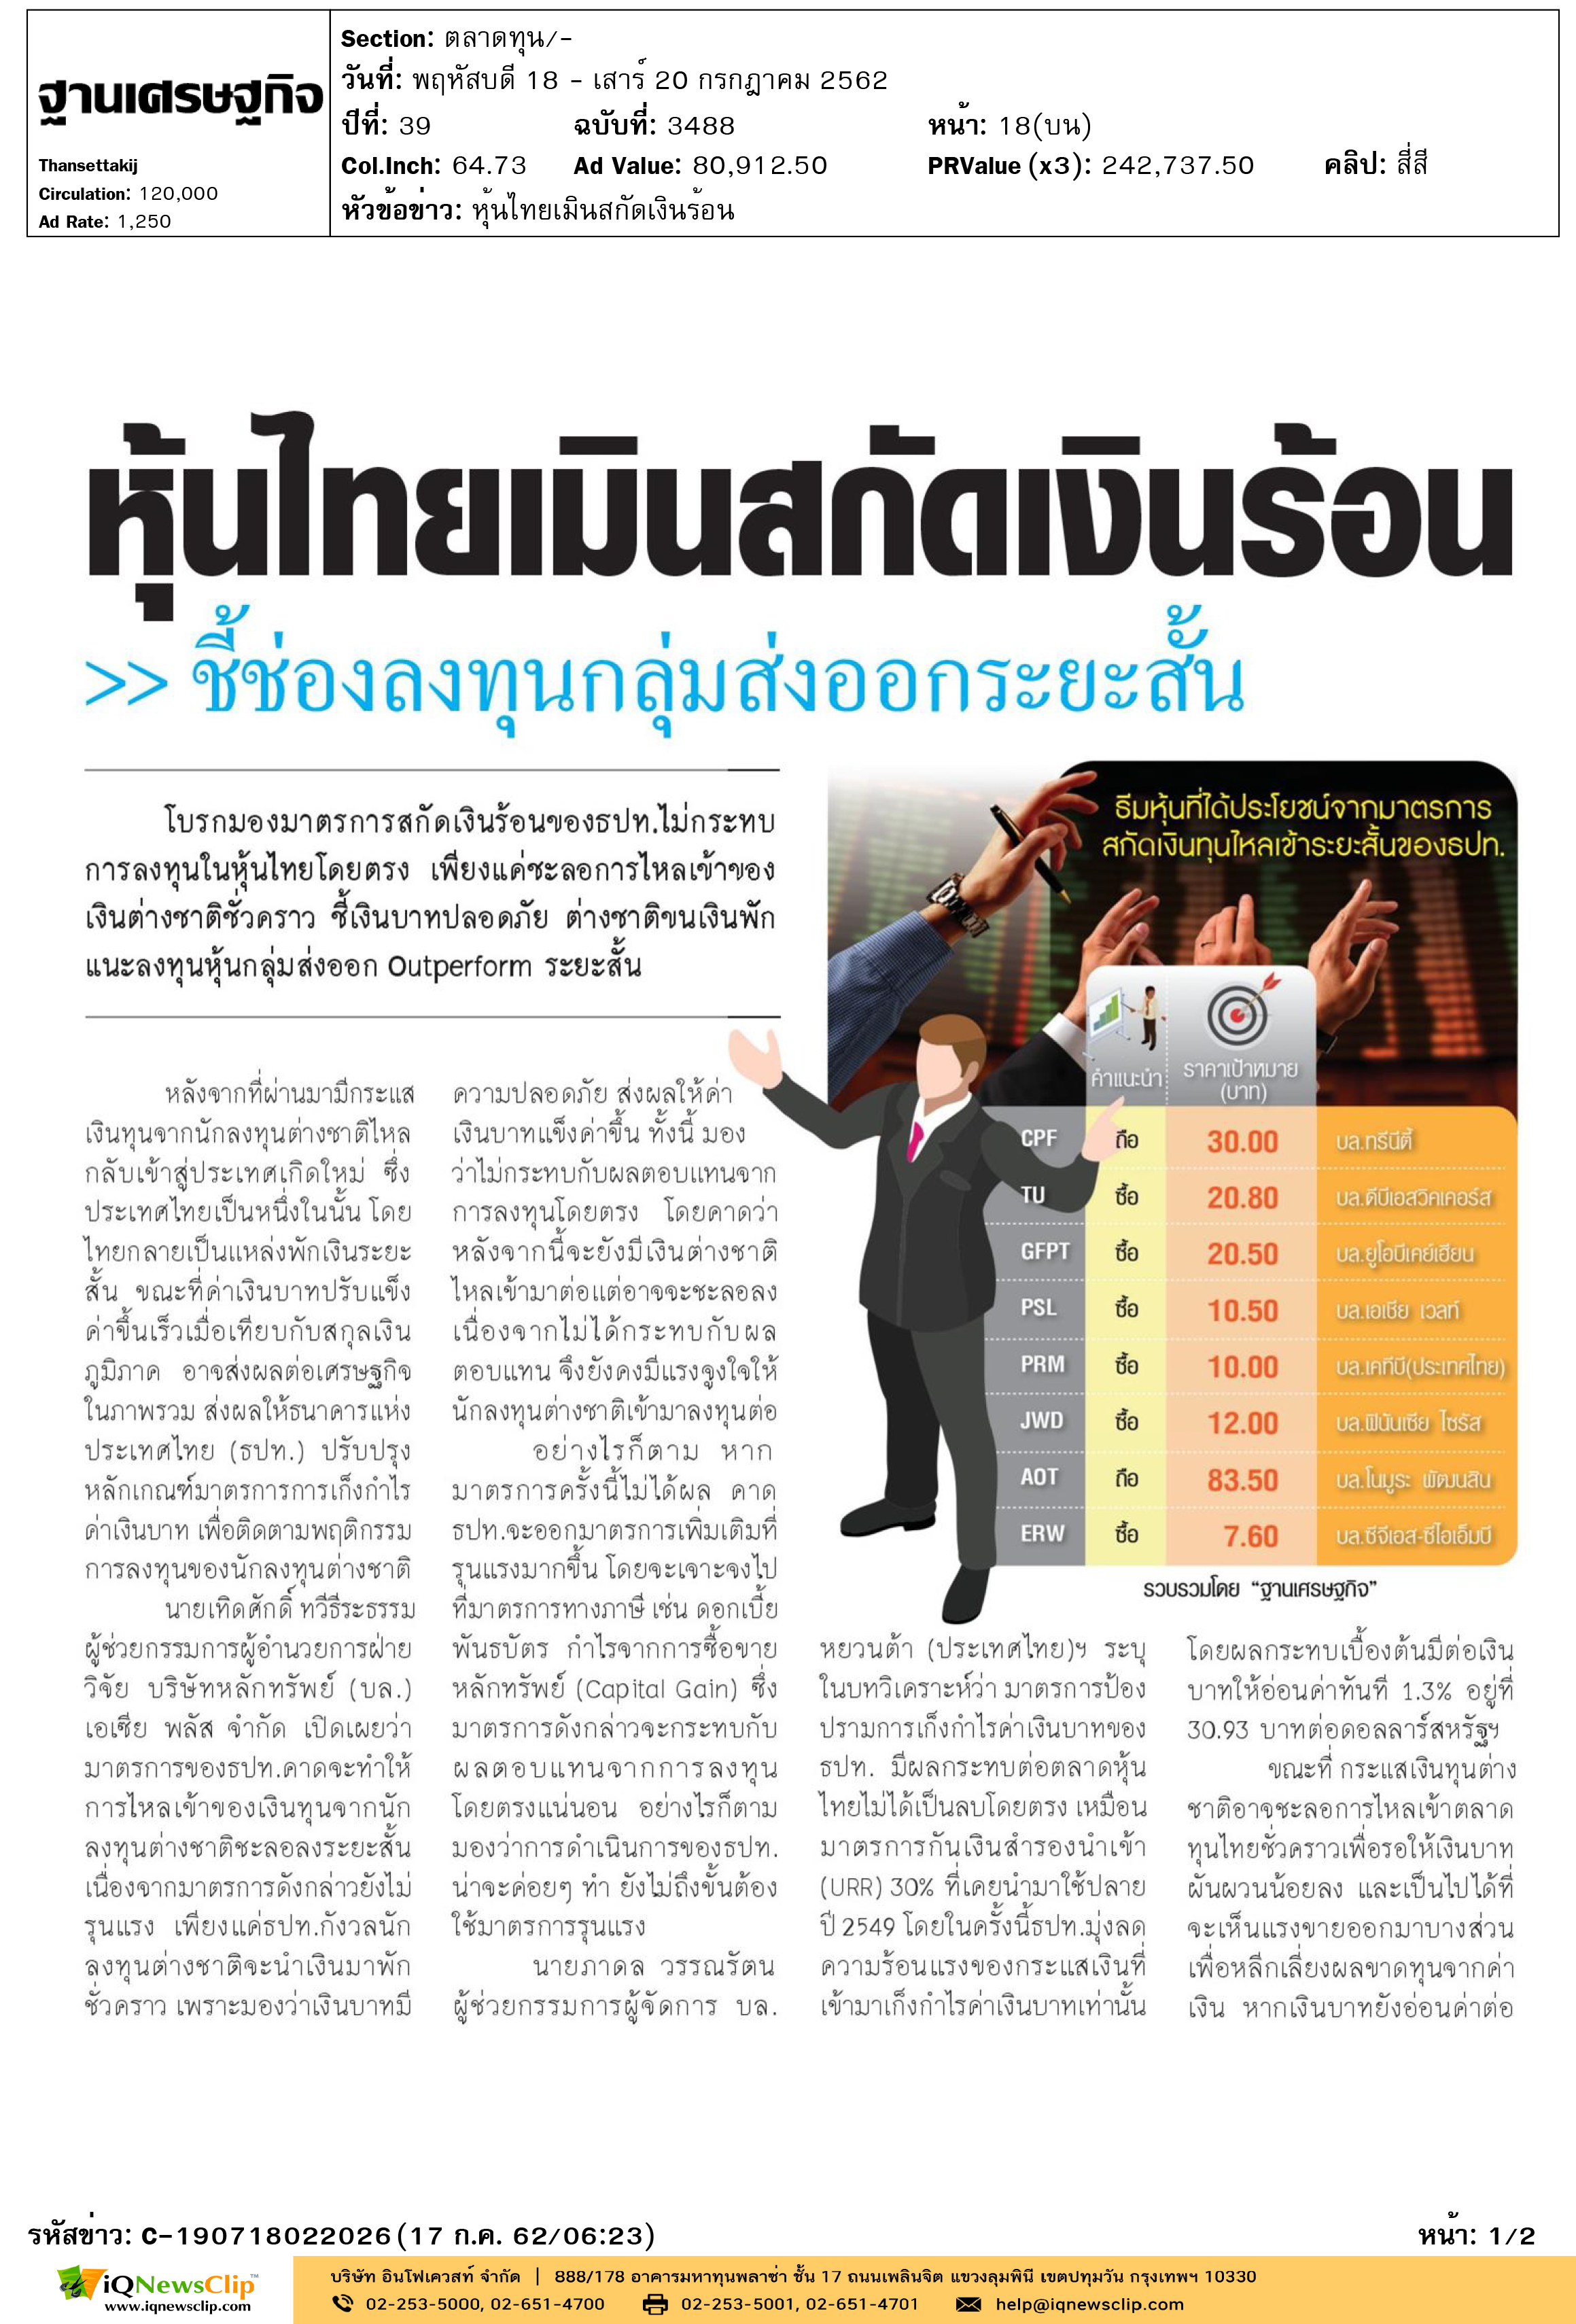 2.ฐานเศรษฐกิจ-หุ้นไทยเมินสกัดเงินร้อน-1